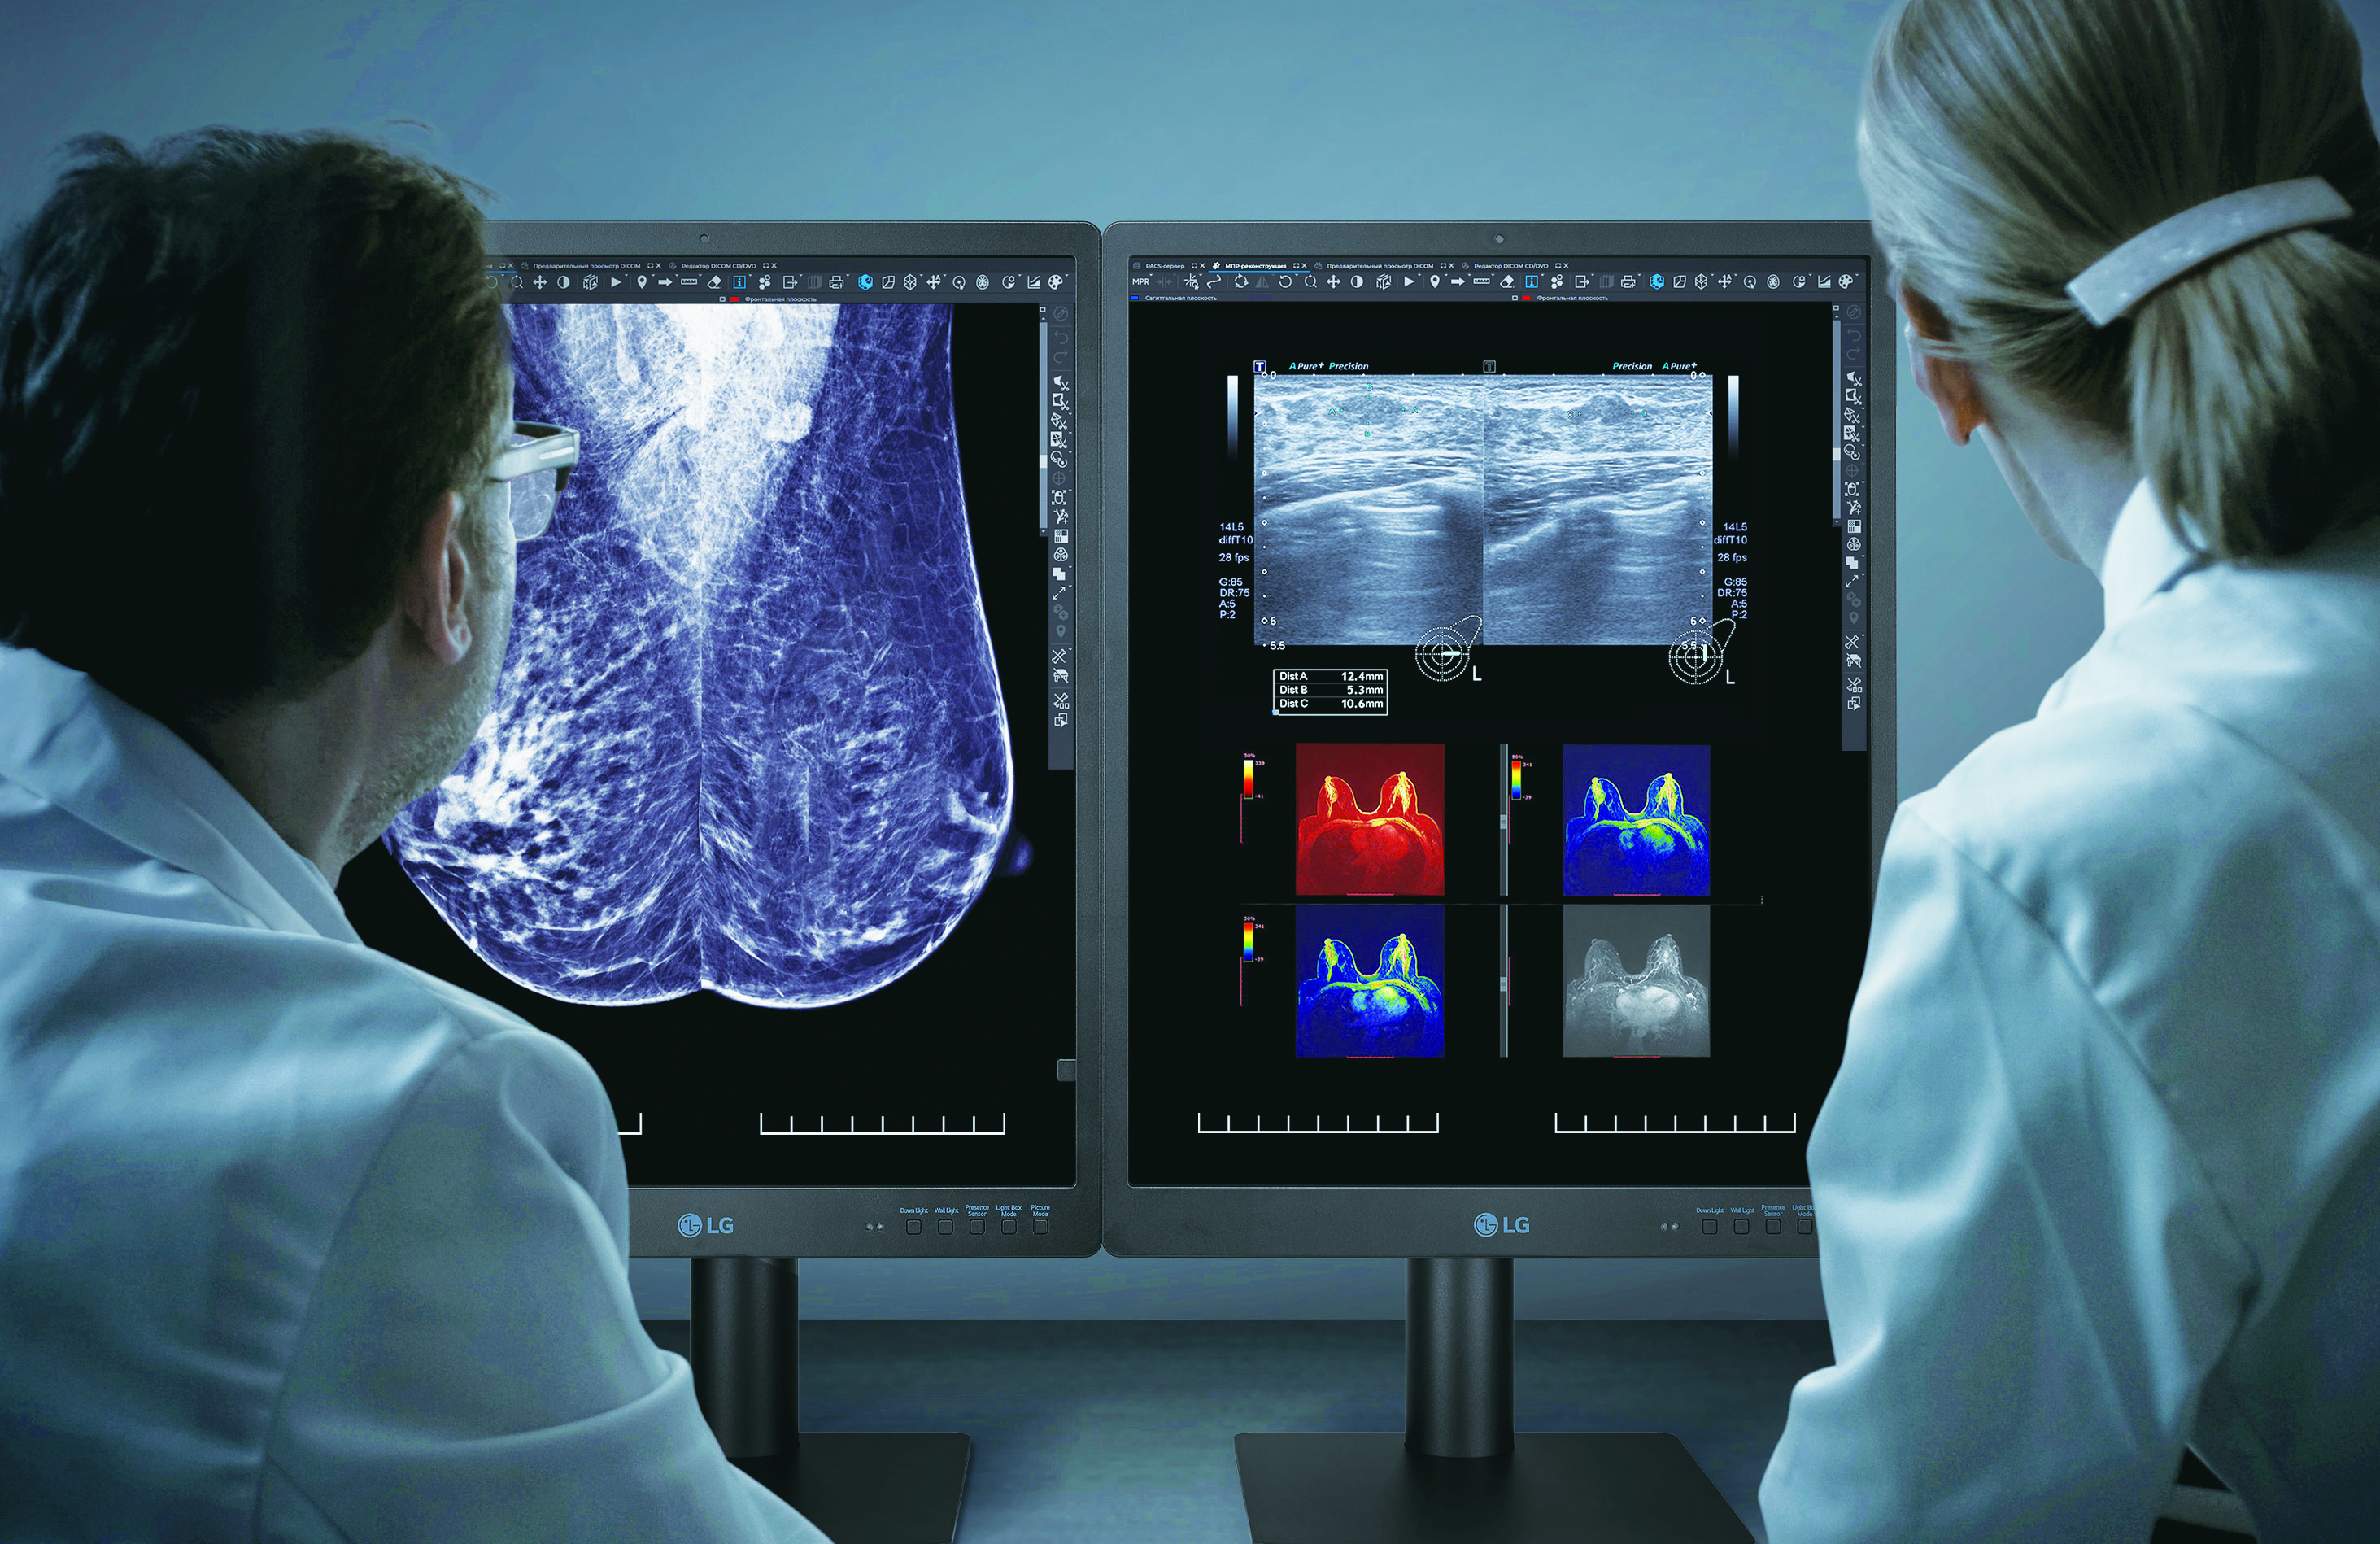 LG acelera su negocio de dispositivos médicos B2B gracias a su línea de monitores de diagnóstico